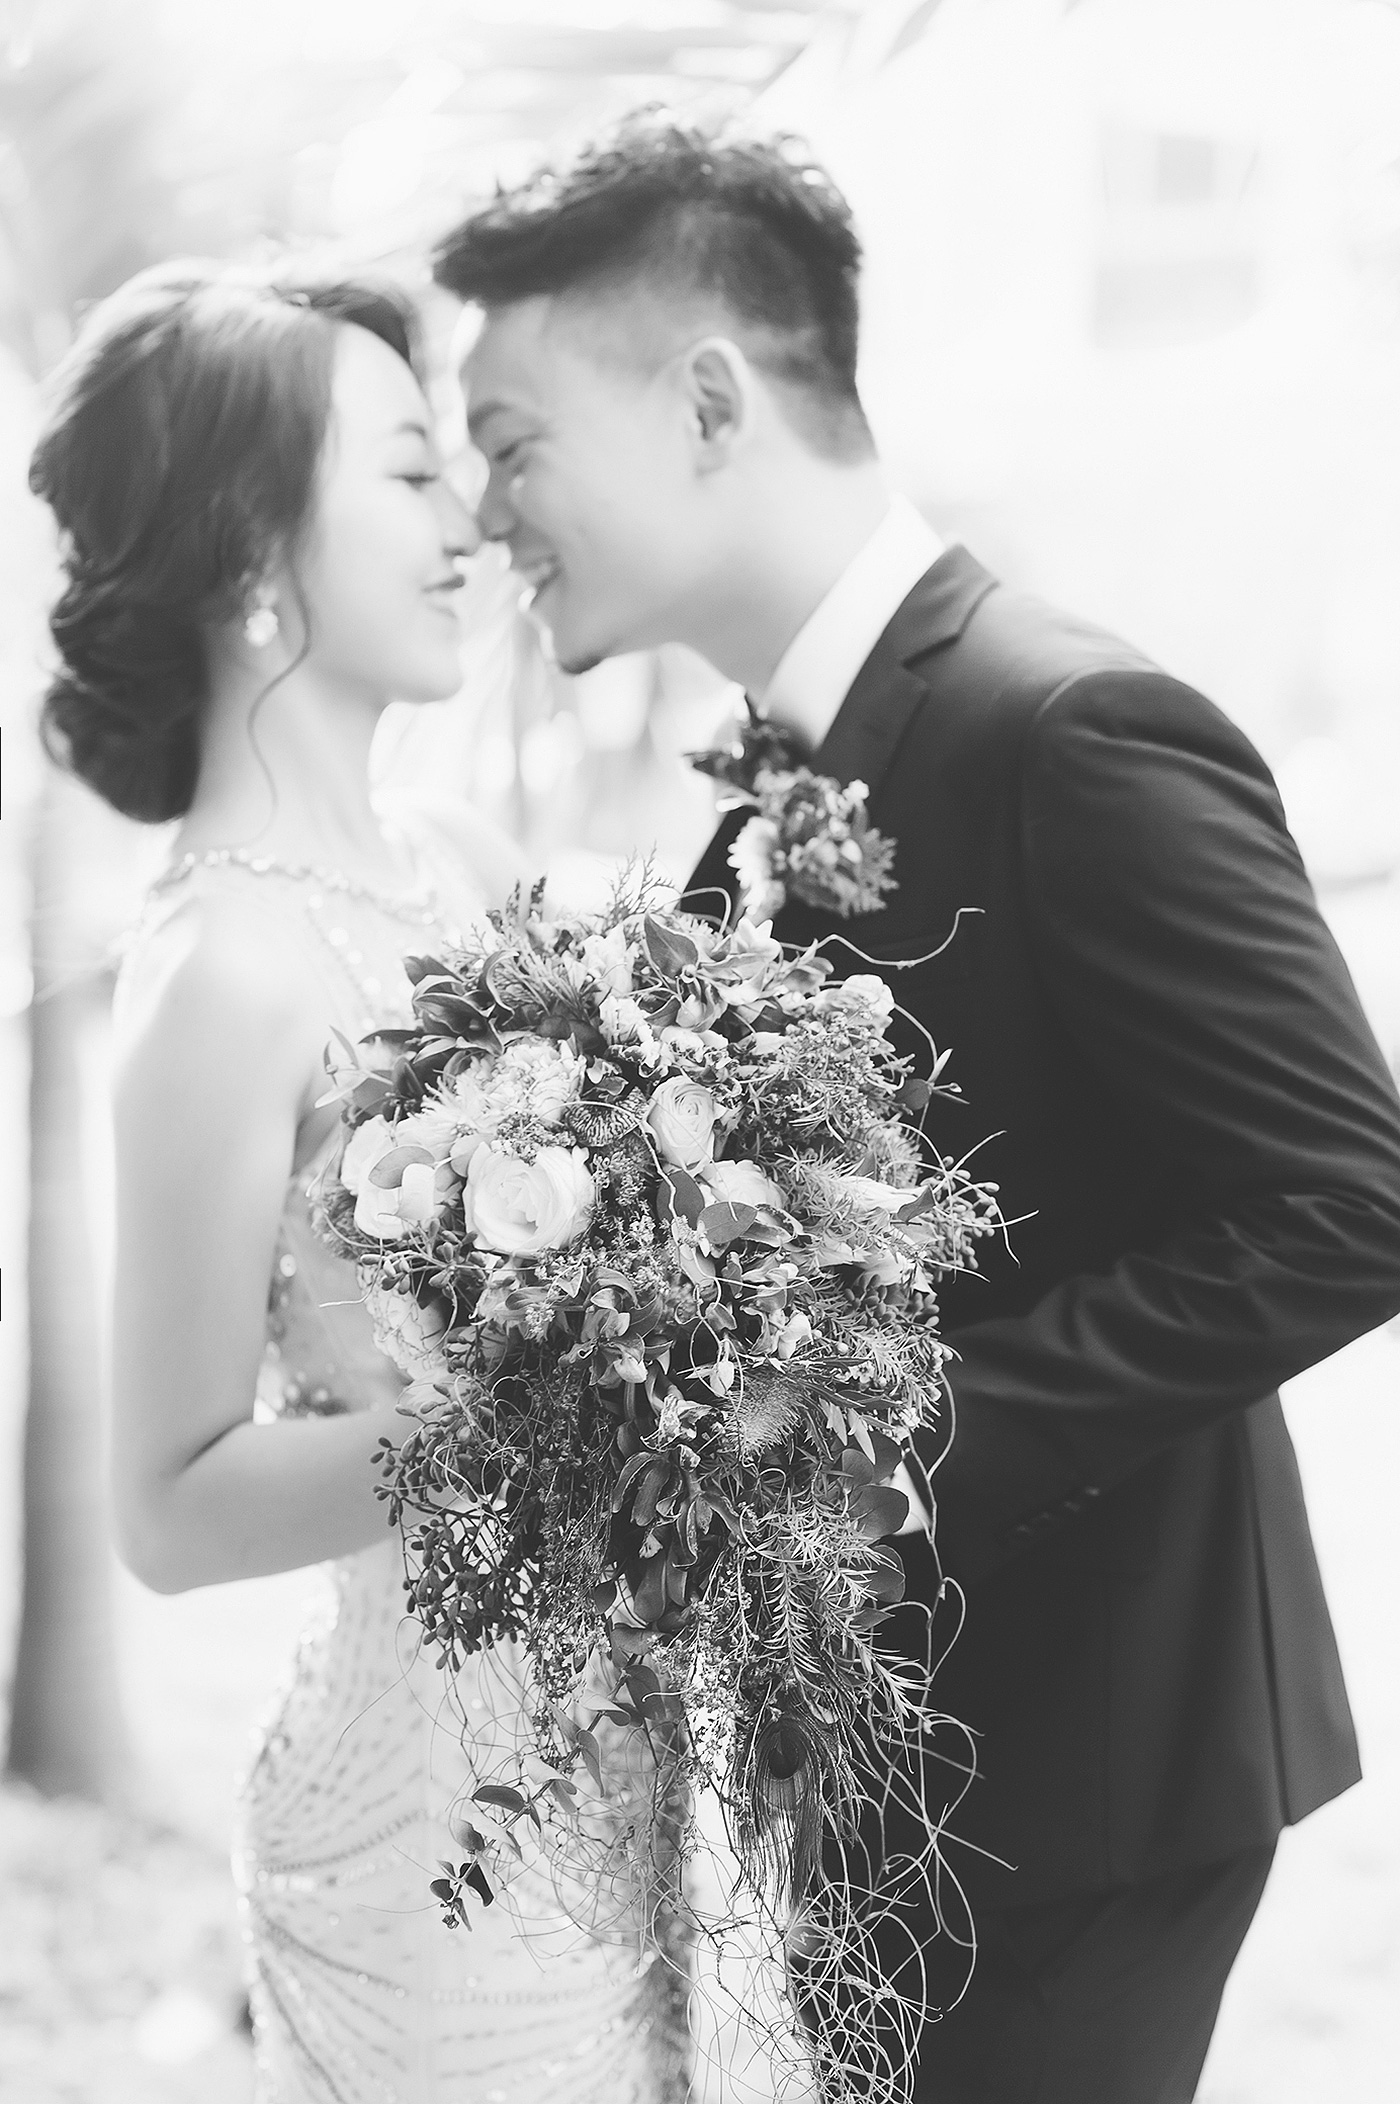 nickchang_wedding_finart-41